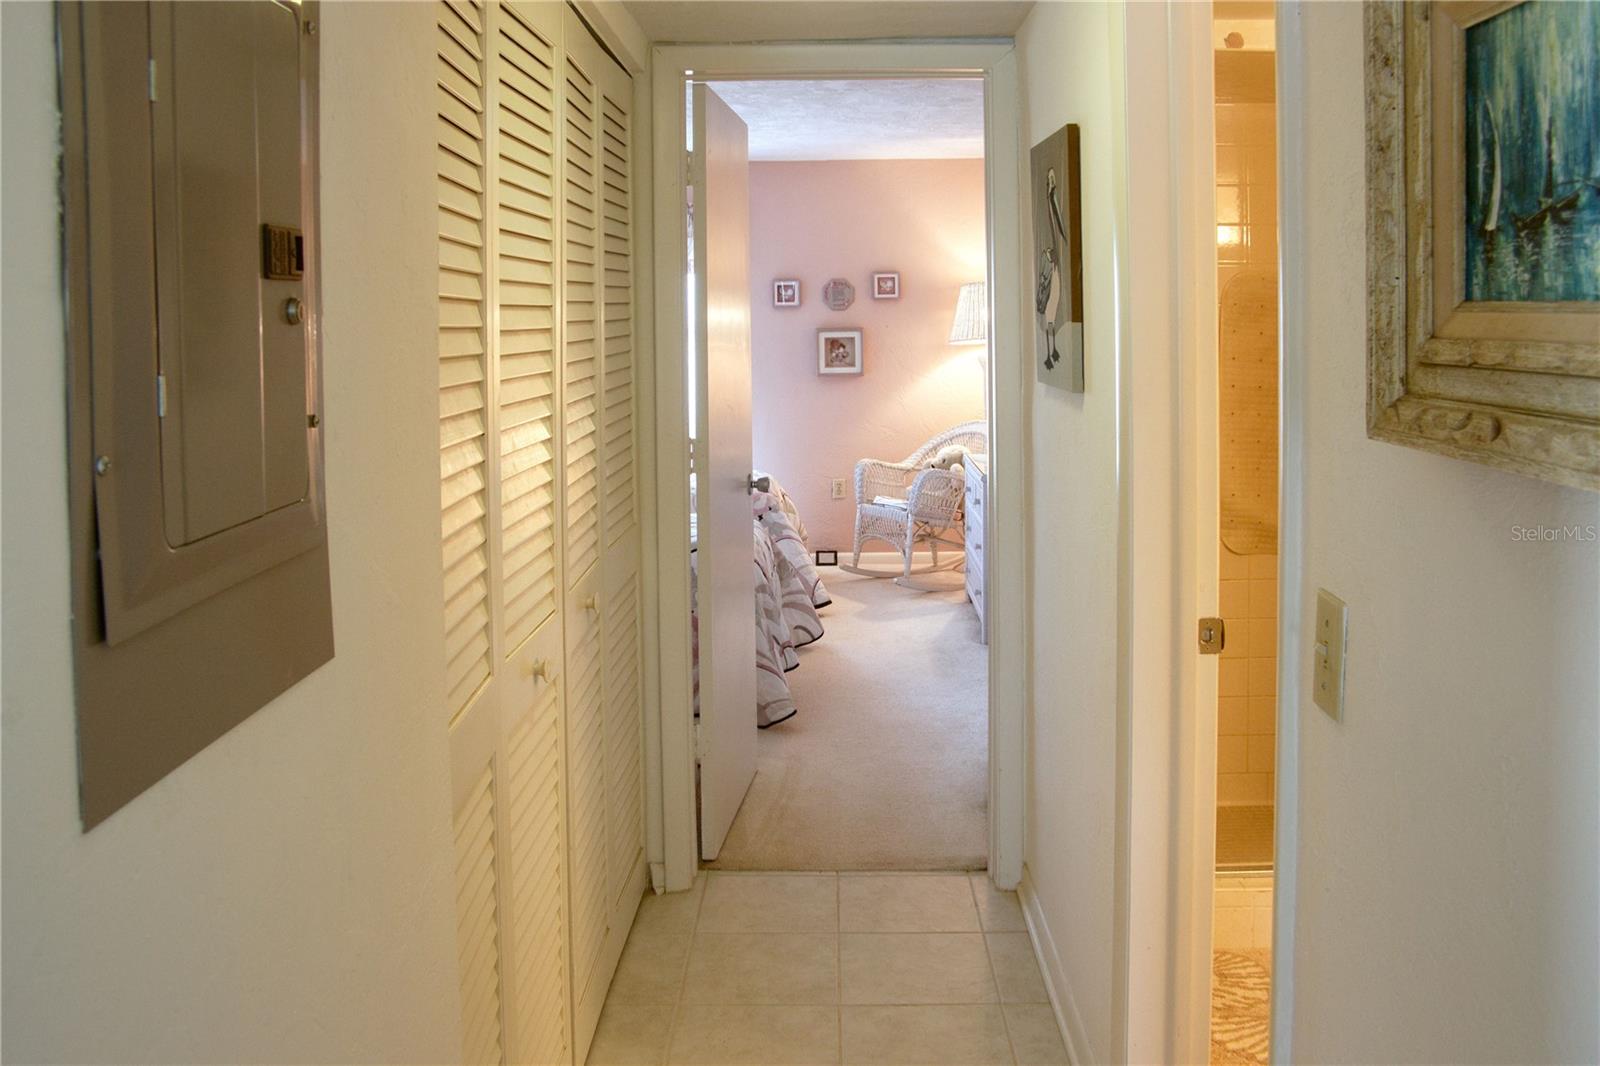 hallway to guest suite, storage!